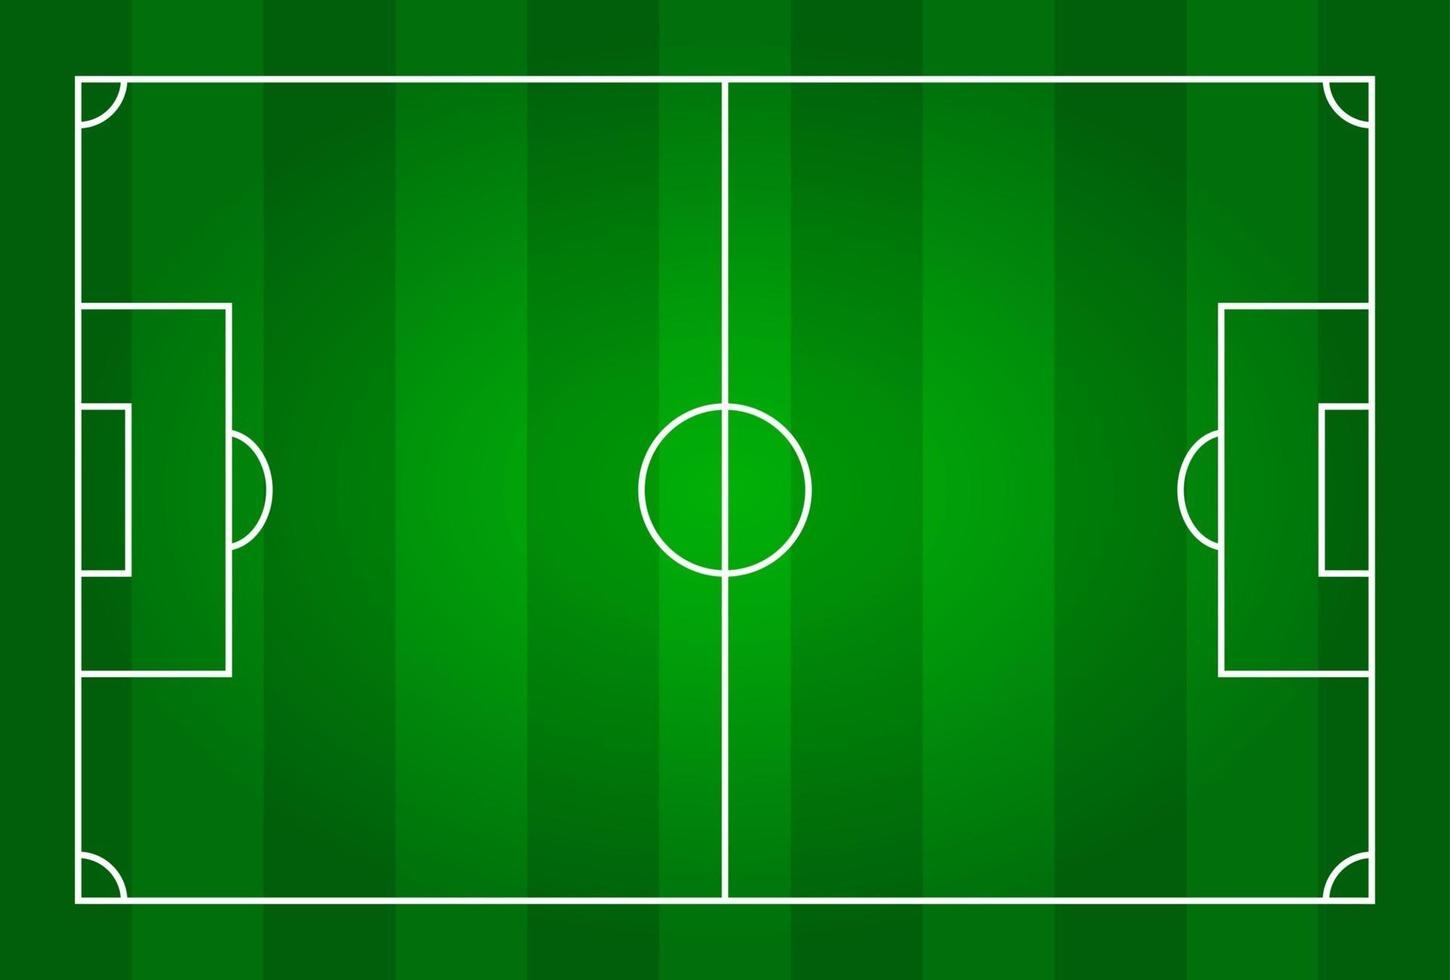 groene kleur voetbalstadion veld bovenaanzicht vector voor internationaal wereldkampioenschap toernooi